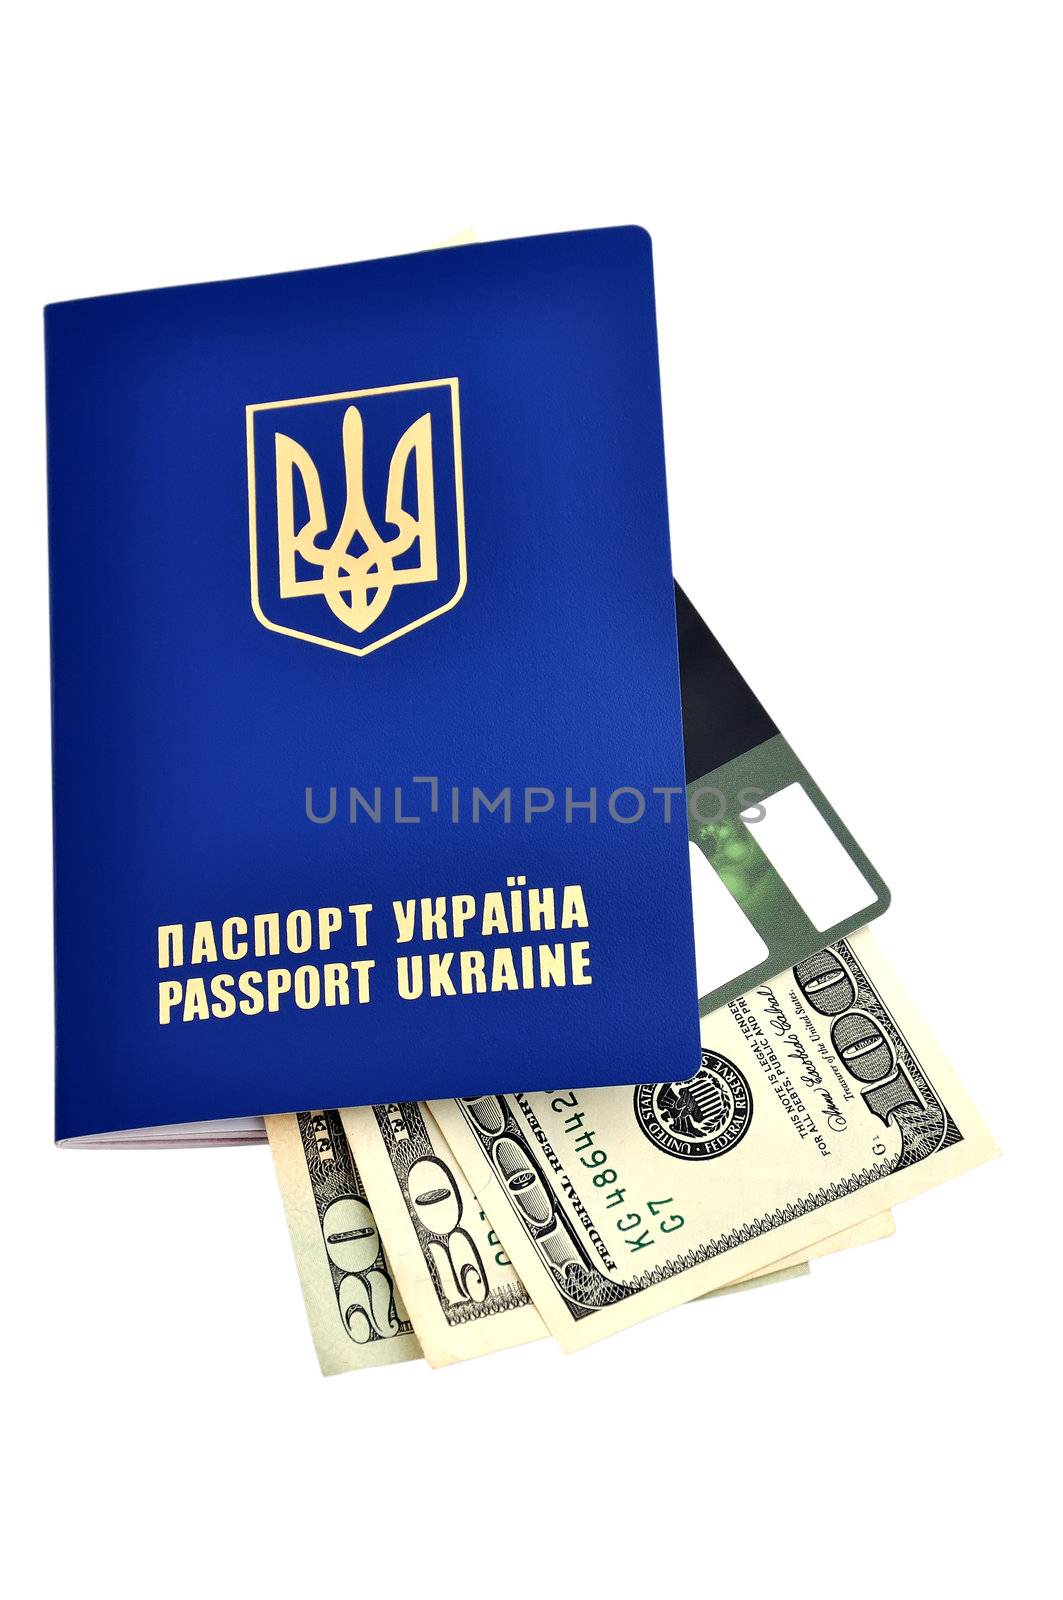 passports and dollars by vetkit